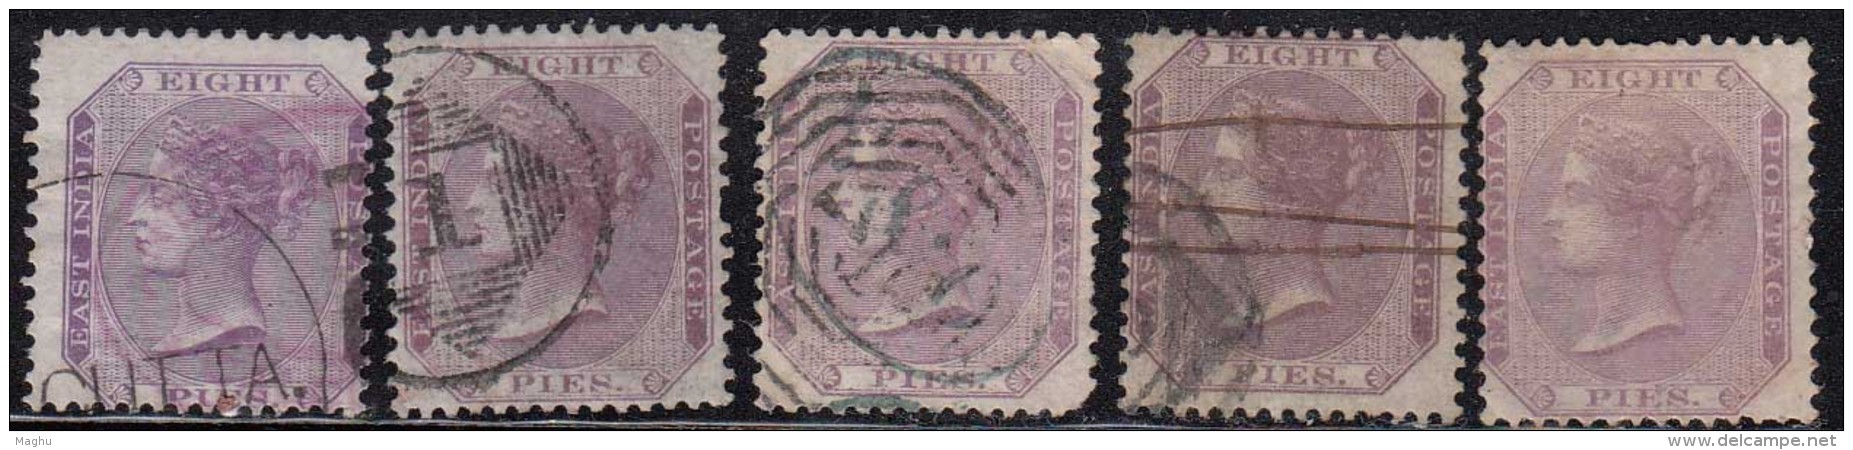 8p X 5 Diff Shades / Variety, Eight Pies , British East India 1860, QV Used, No Watermark - 1854 Britische Indien-Kompanie